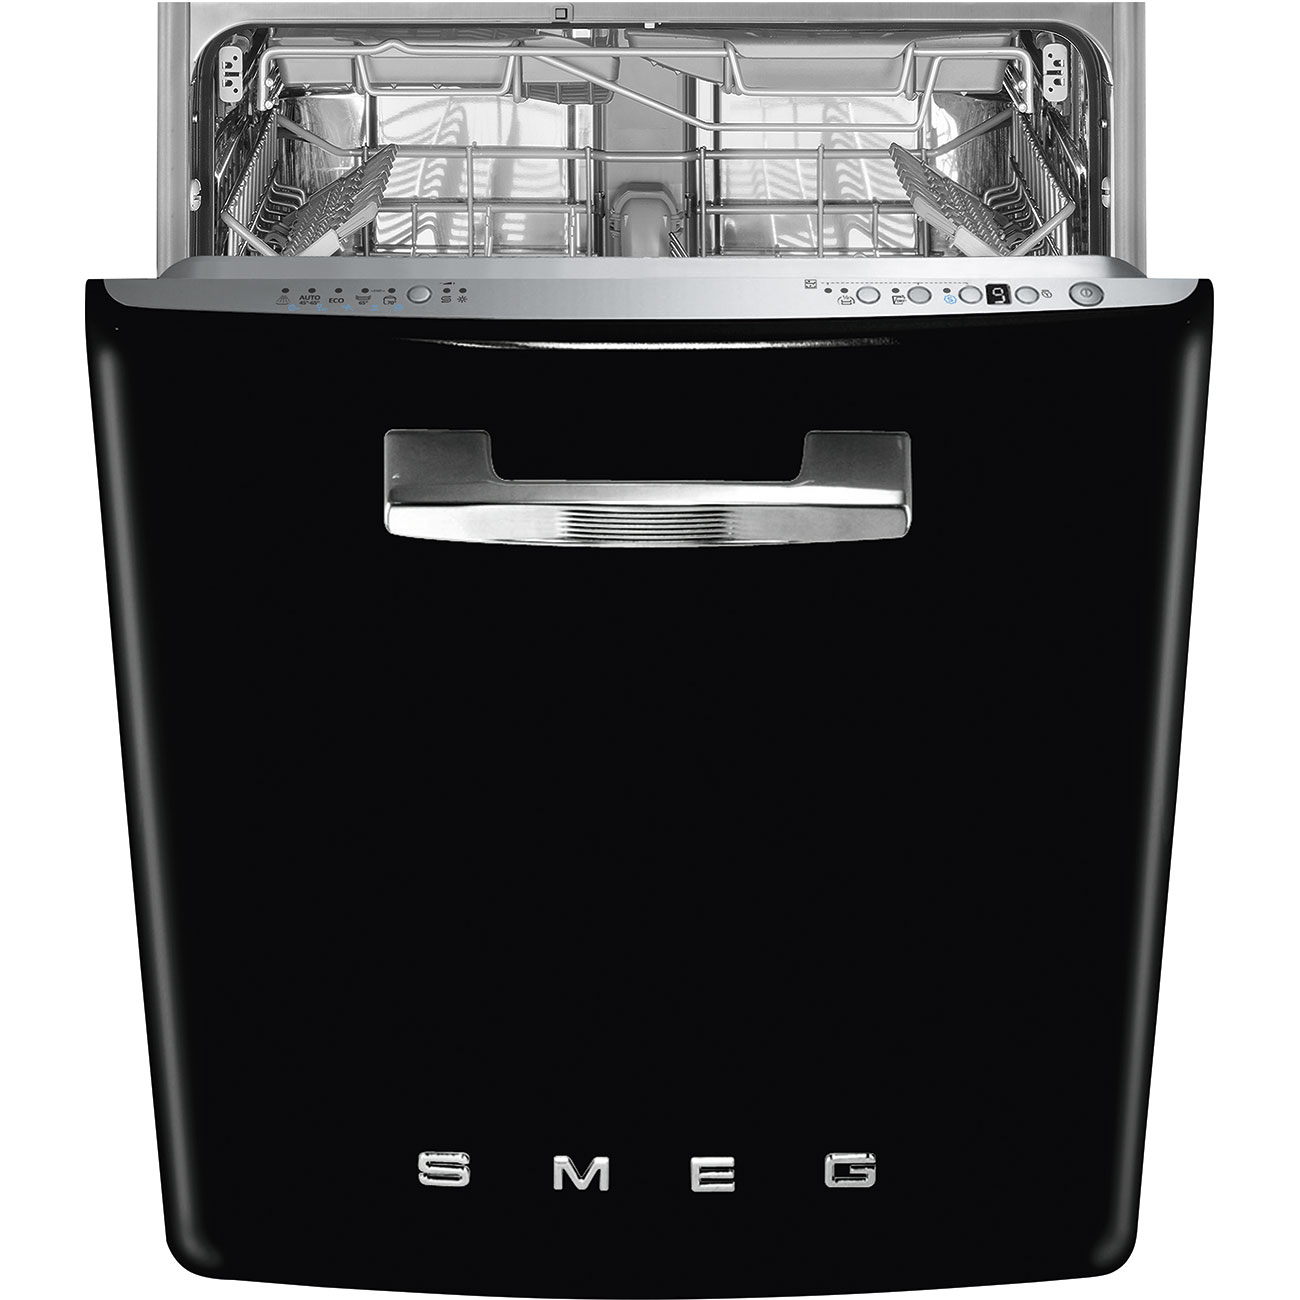 Встраиваемая посудомоечная машина черная. Встраиваемая посудомоечная машина Smeg st2fabbl. Посудомоечная машина Smeg st122. Посудомоечная машина Smeg st2fabne. Smeg посудомоечная машина отдельностоящая.